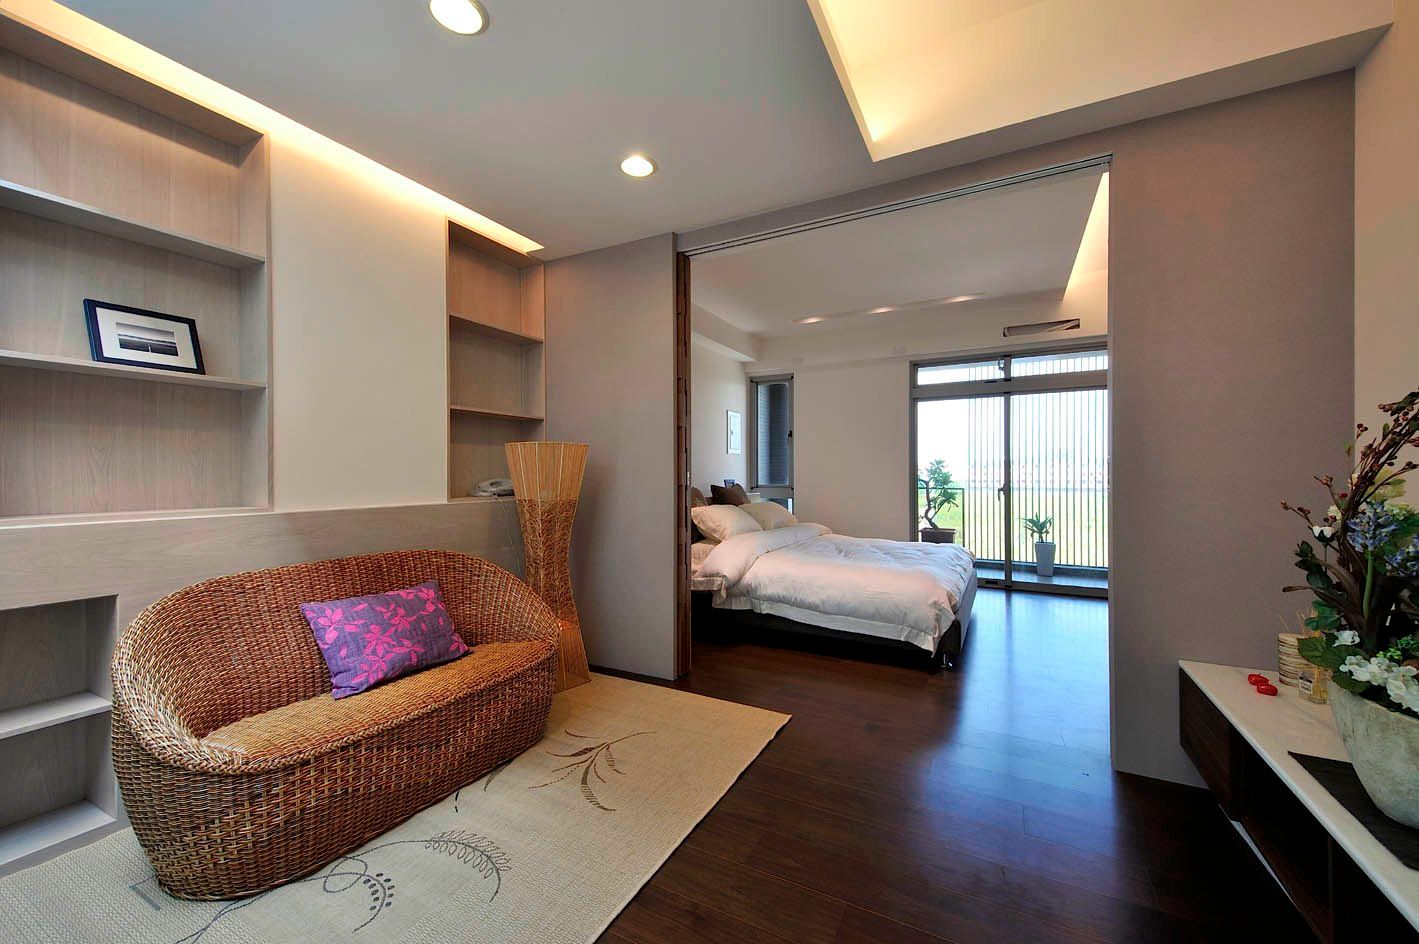 新屋-芥子, 一穰設計_EO design studio 一穰設計_EO design studio Modern style bedroom